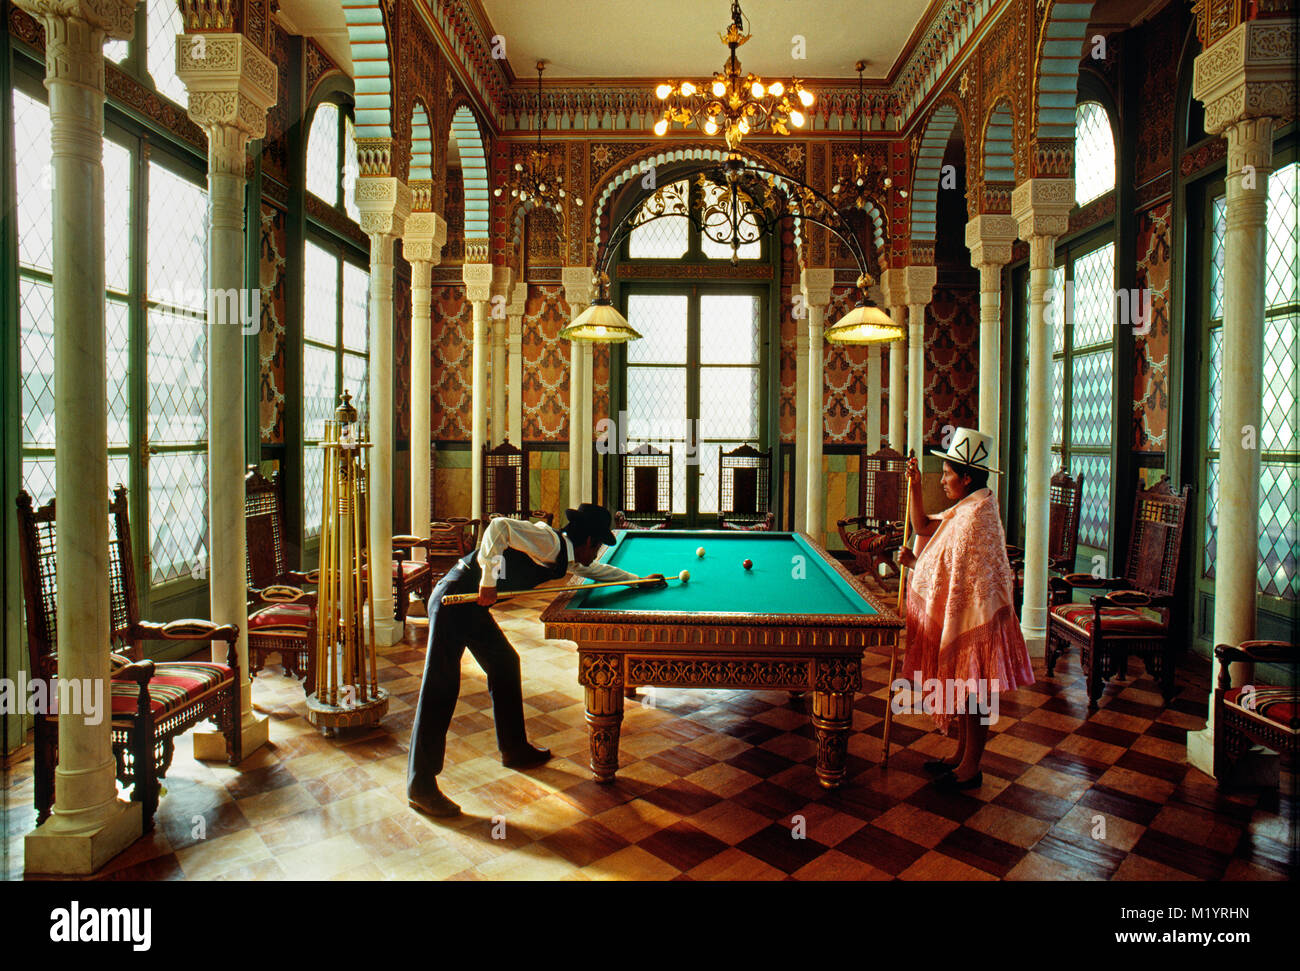 Bolivia. Cochabamba. Uomo e donna che gioca a biliardo nel Palacio, palazzo Portales. Una copia (replica) dell'Alambra Palace di Granada in Spagna. Foto Stock